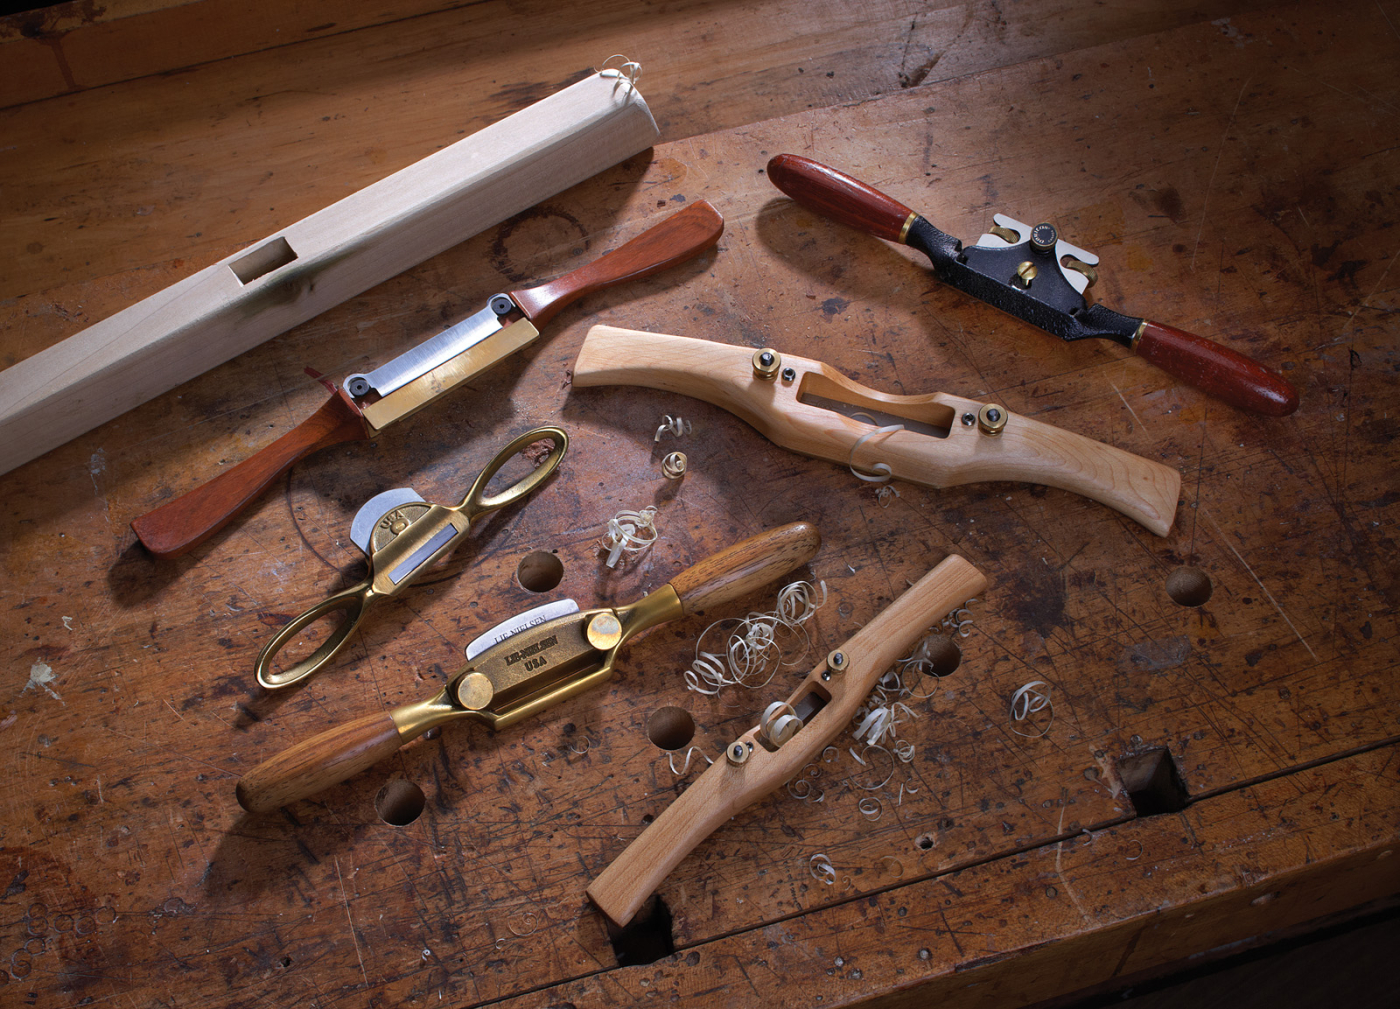 Adjustable Spokeshave, Woodworking Hand Tool Plane Spoke Shave Set